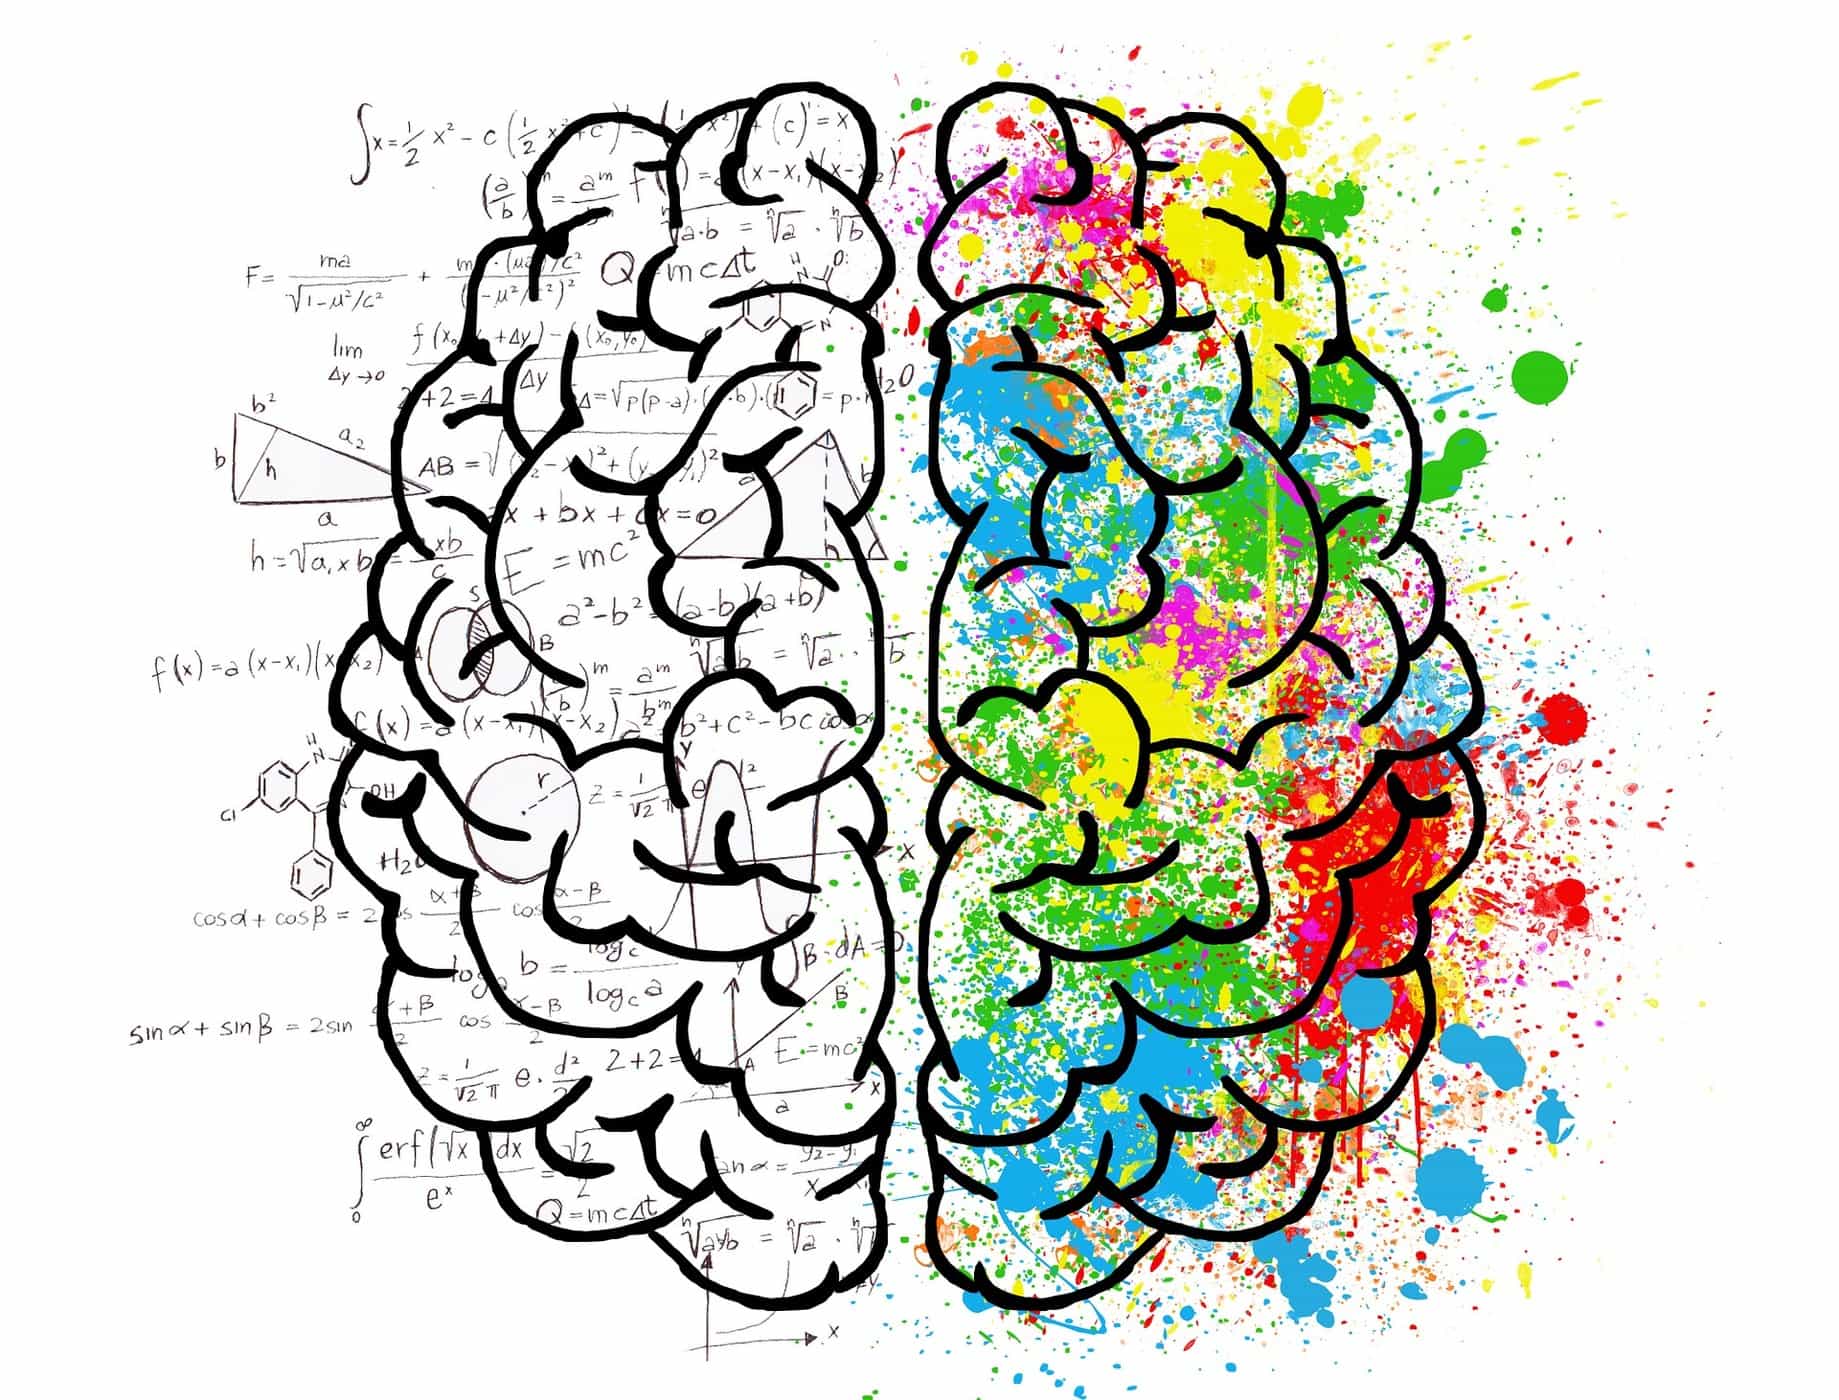 การทำงานของสมองซีกขวาและสมองซีกซ้ายต่างกันจริงหรือ? อะไรคือความแตกต่าง?